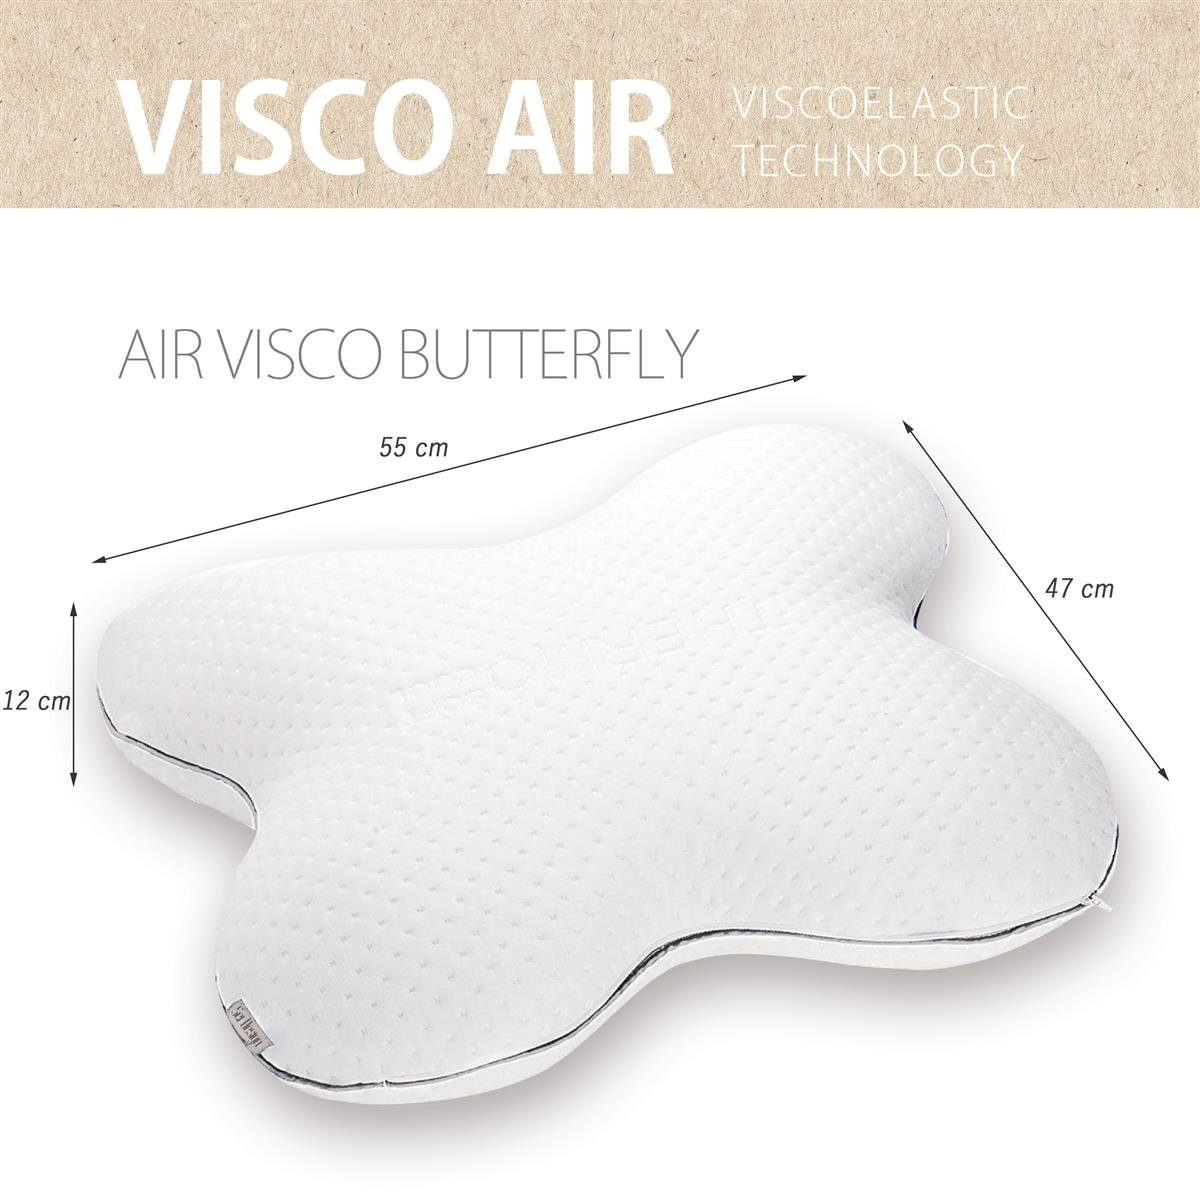 Nackenstützkissen Visco Air Bezug: Memory-Schaum BASF Butterfly, Viscoelastischer Bauchschläfer, Qualitätsschaum Rückenschläfer, Thermoregulierender von deutscher Bezug, SEI Design, - Seitenschläfer